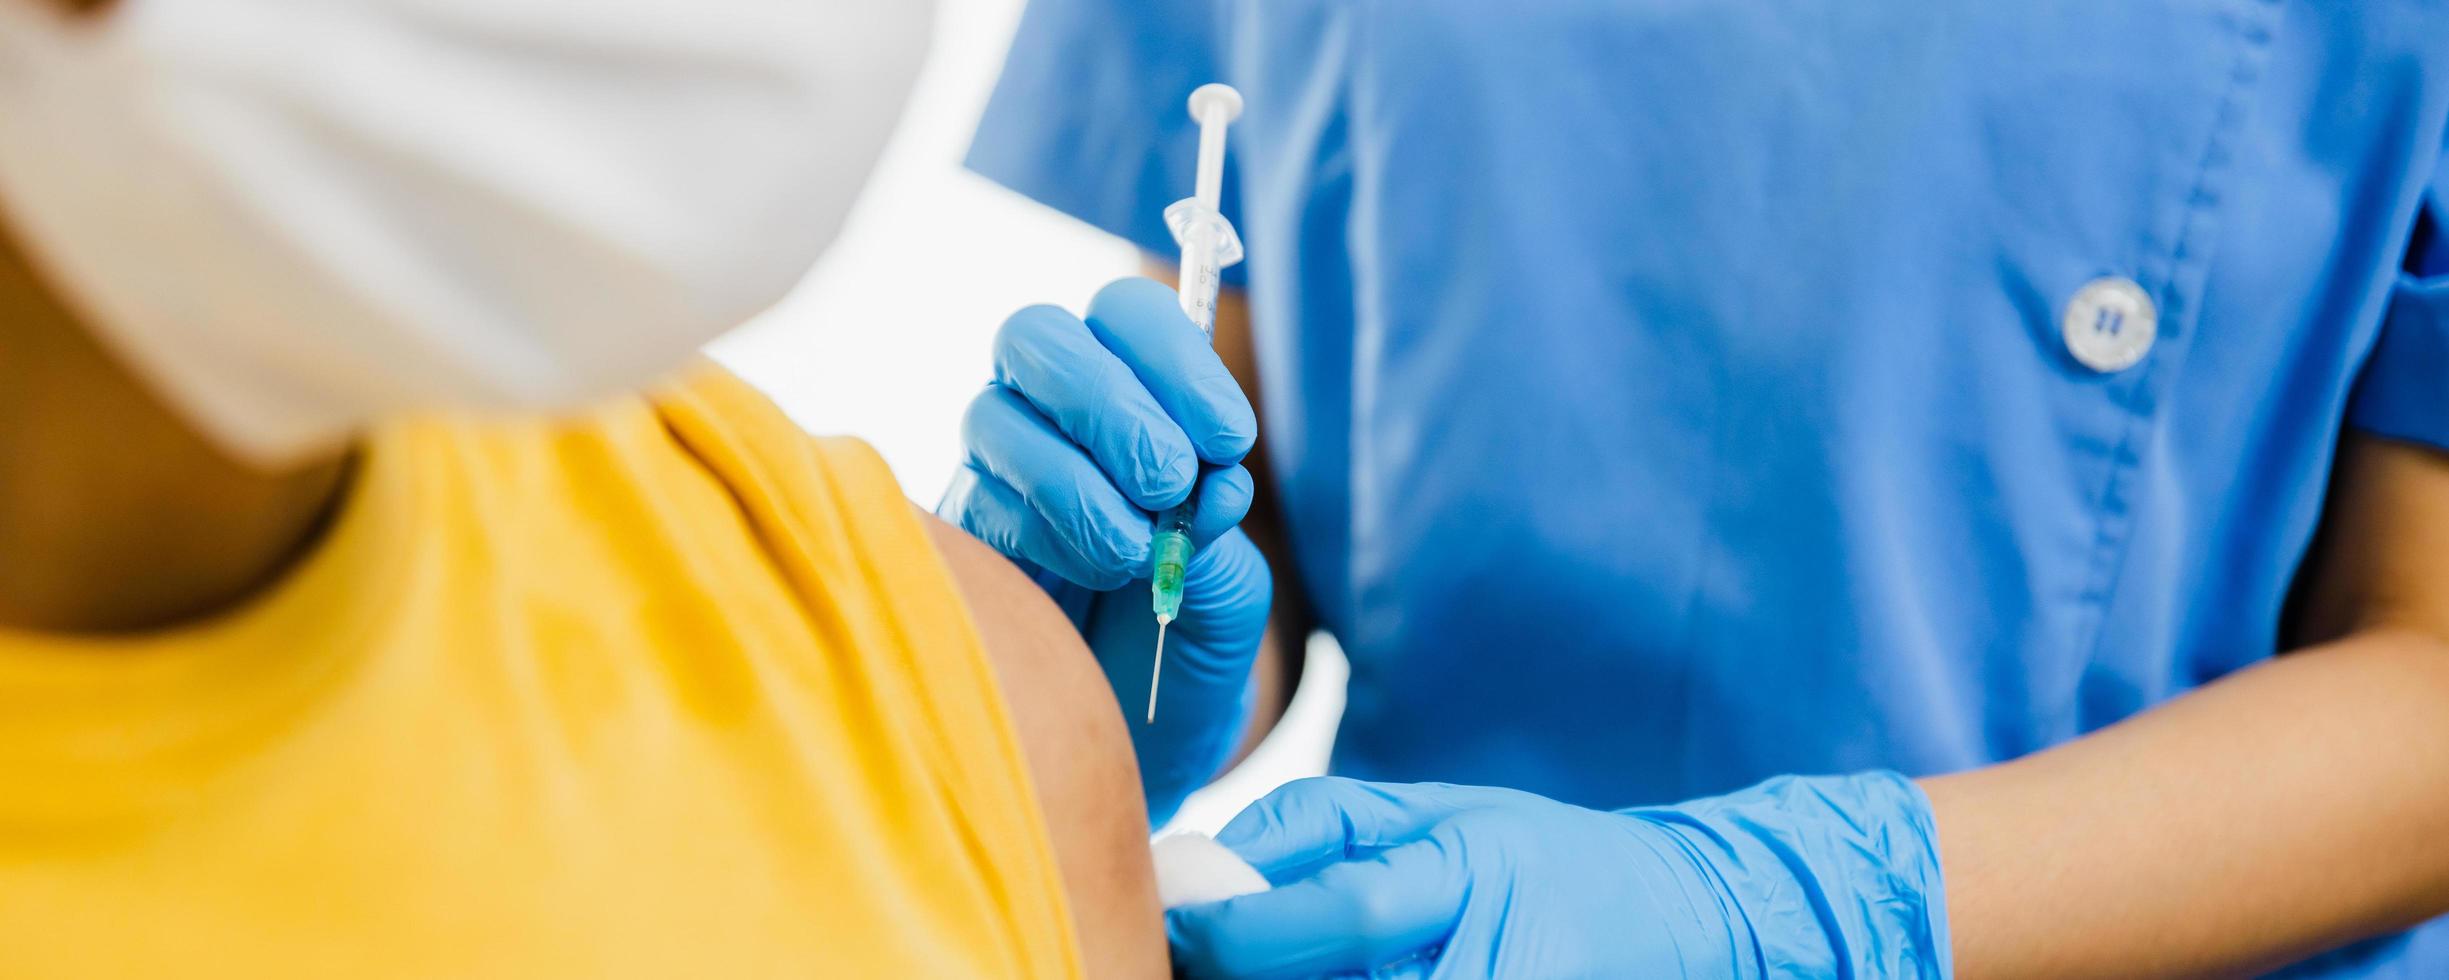 close-up hand van vrouwelijke arts die de spuit vasthoudt en katoen gebruikt voordat hij de patiënt in een medisch masker injecteert. covid-19 of coronavirusvaccin foto